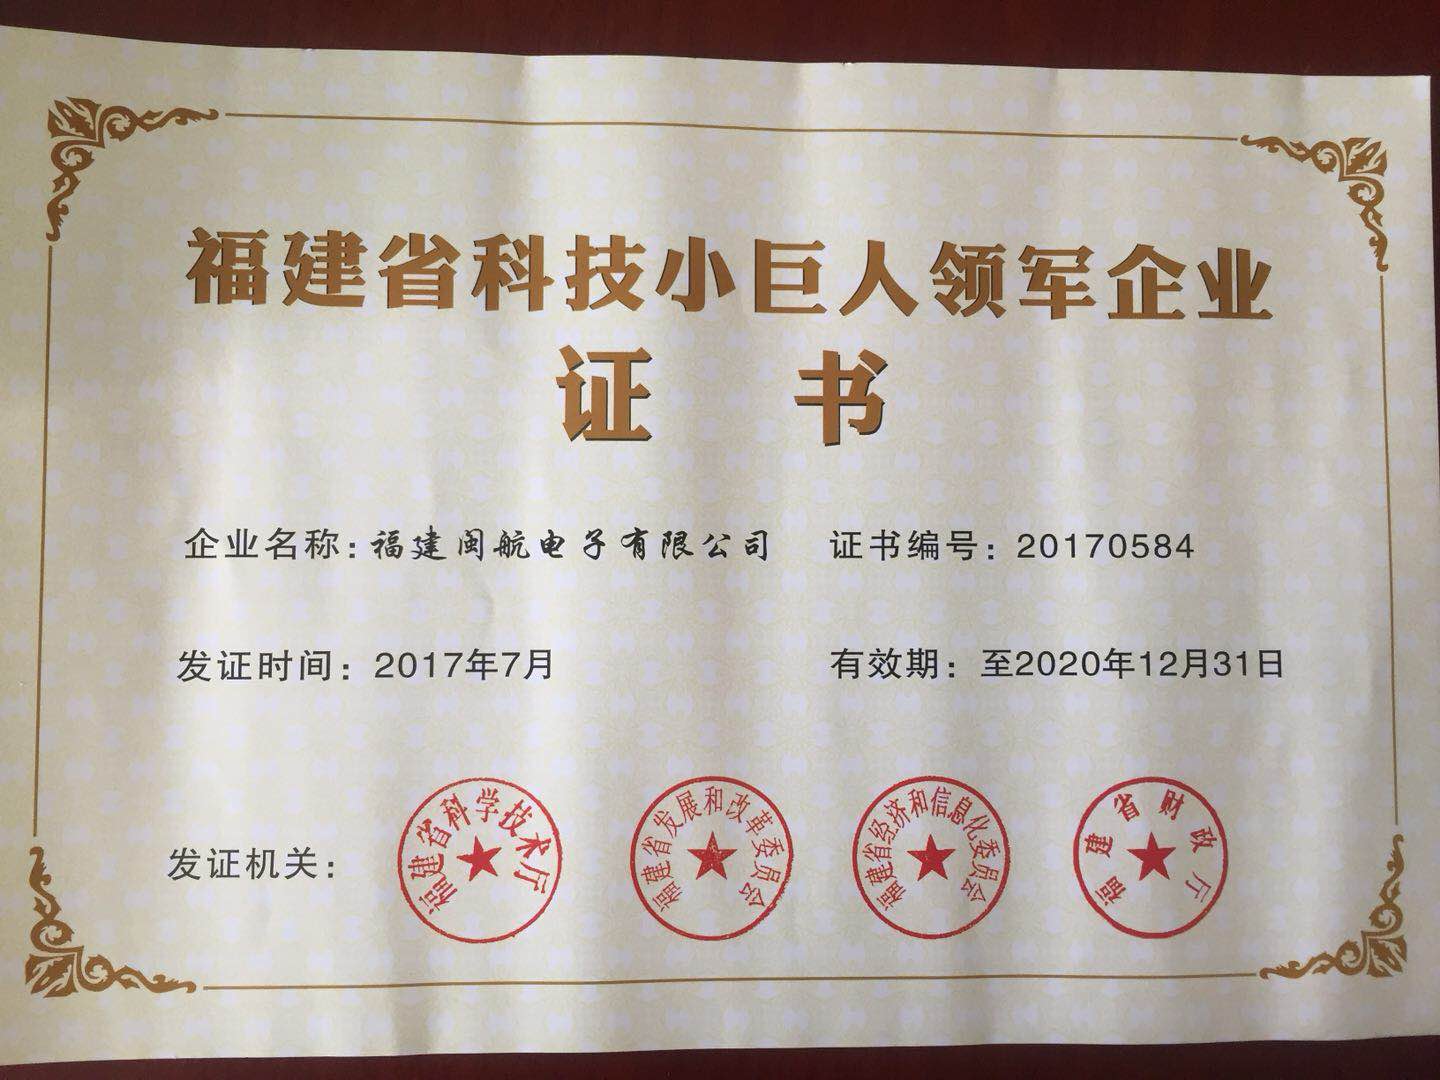 Fujian Province Little Giant leader certificate 2017-2020